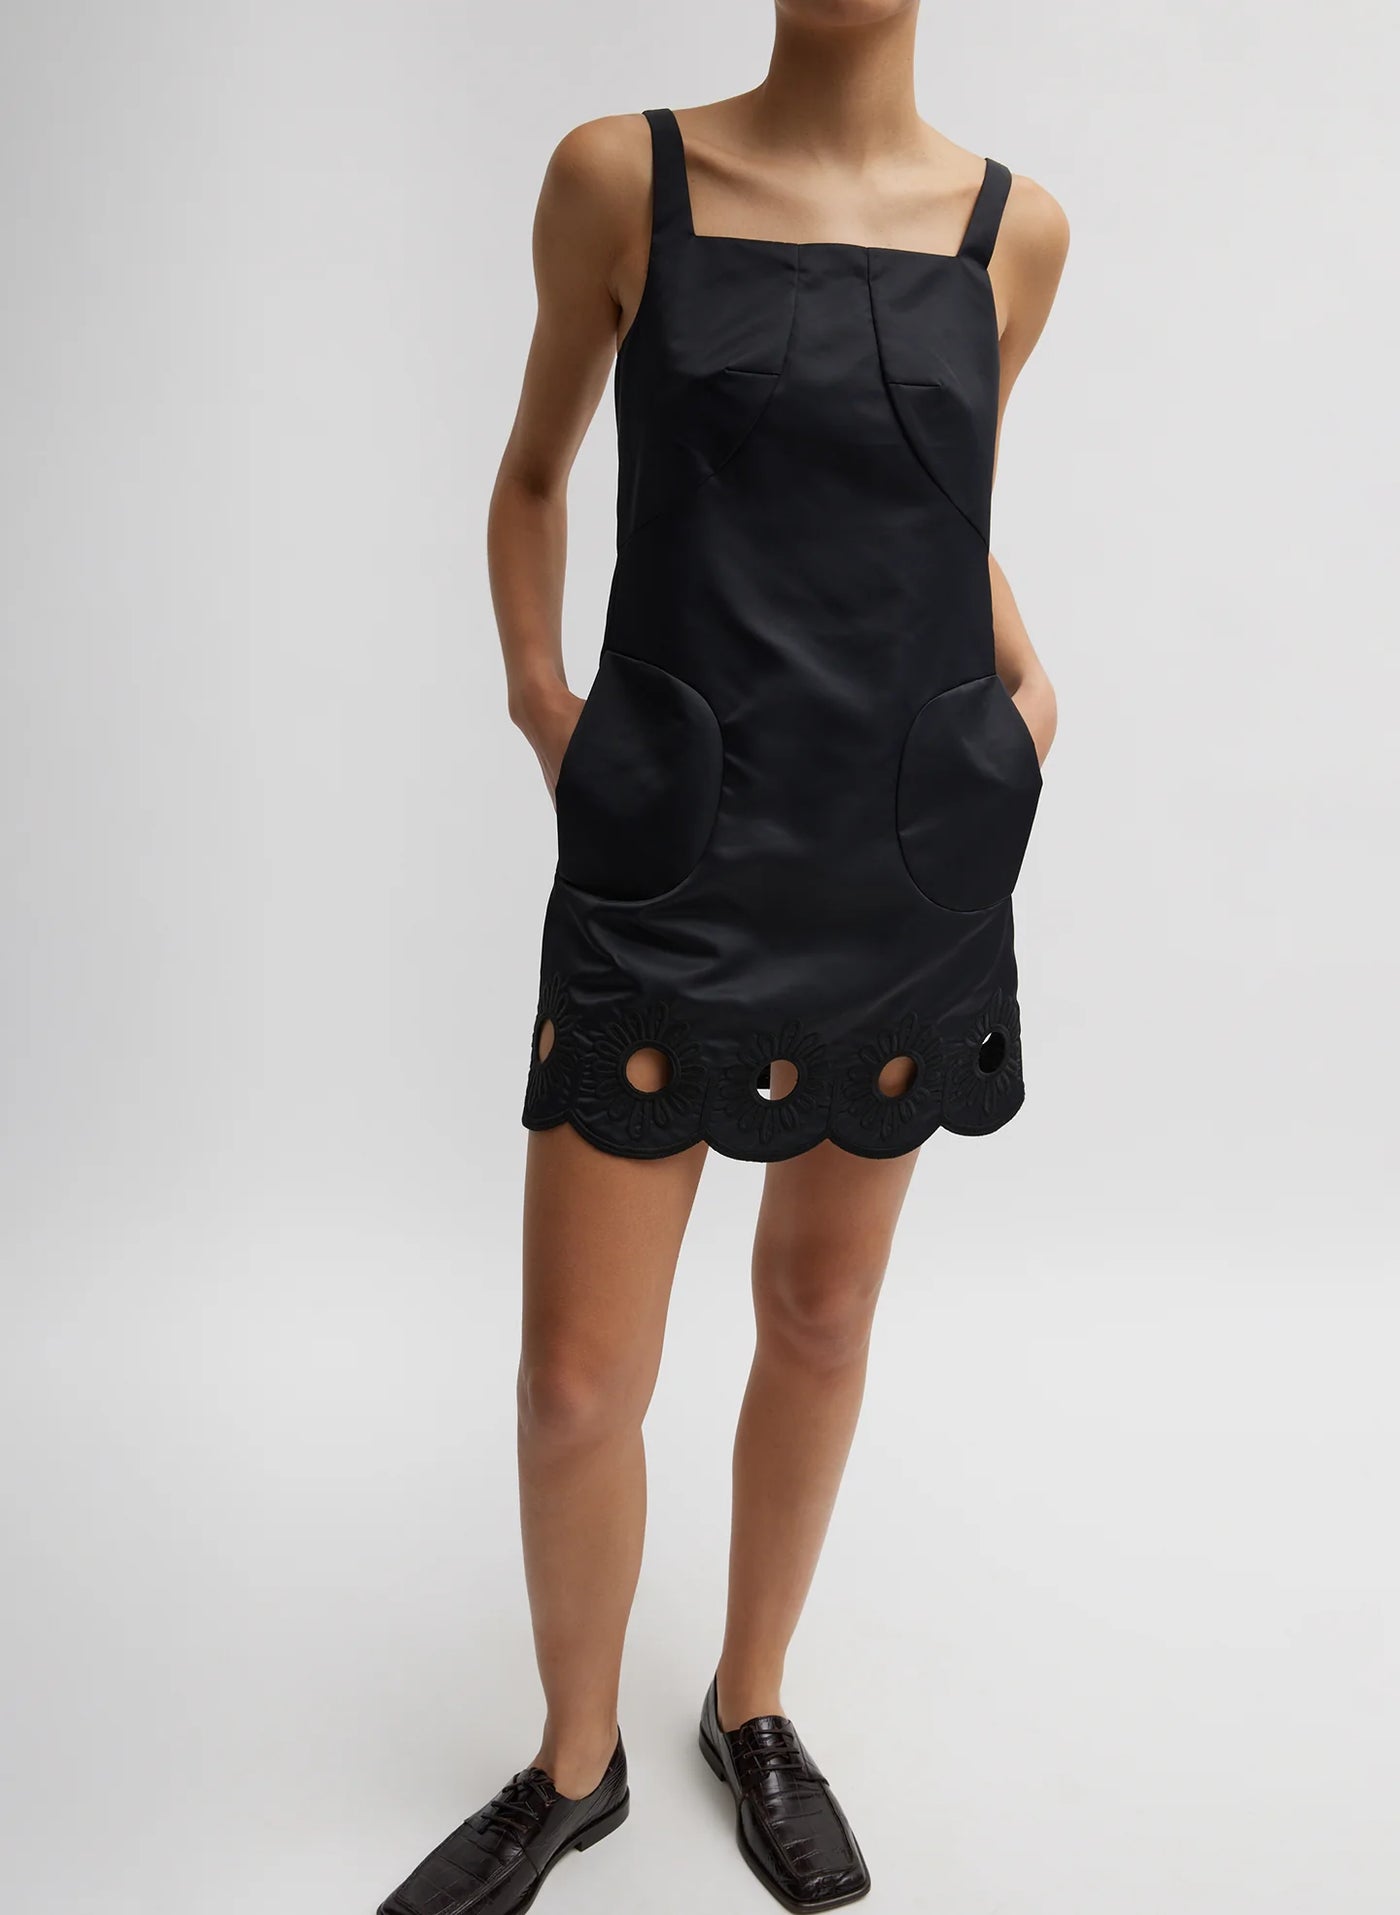 Daisy Embroidery Short Dress - Black